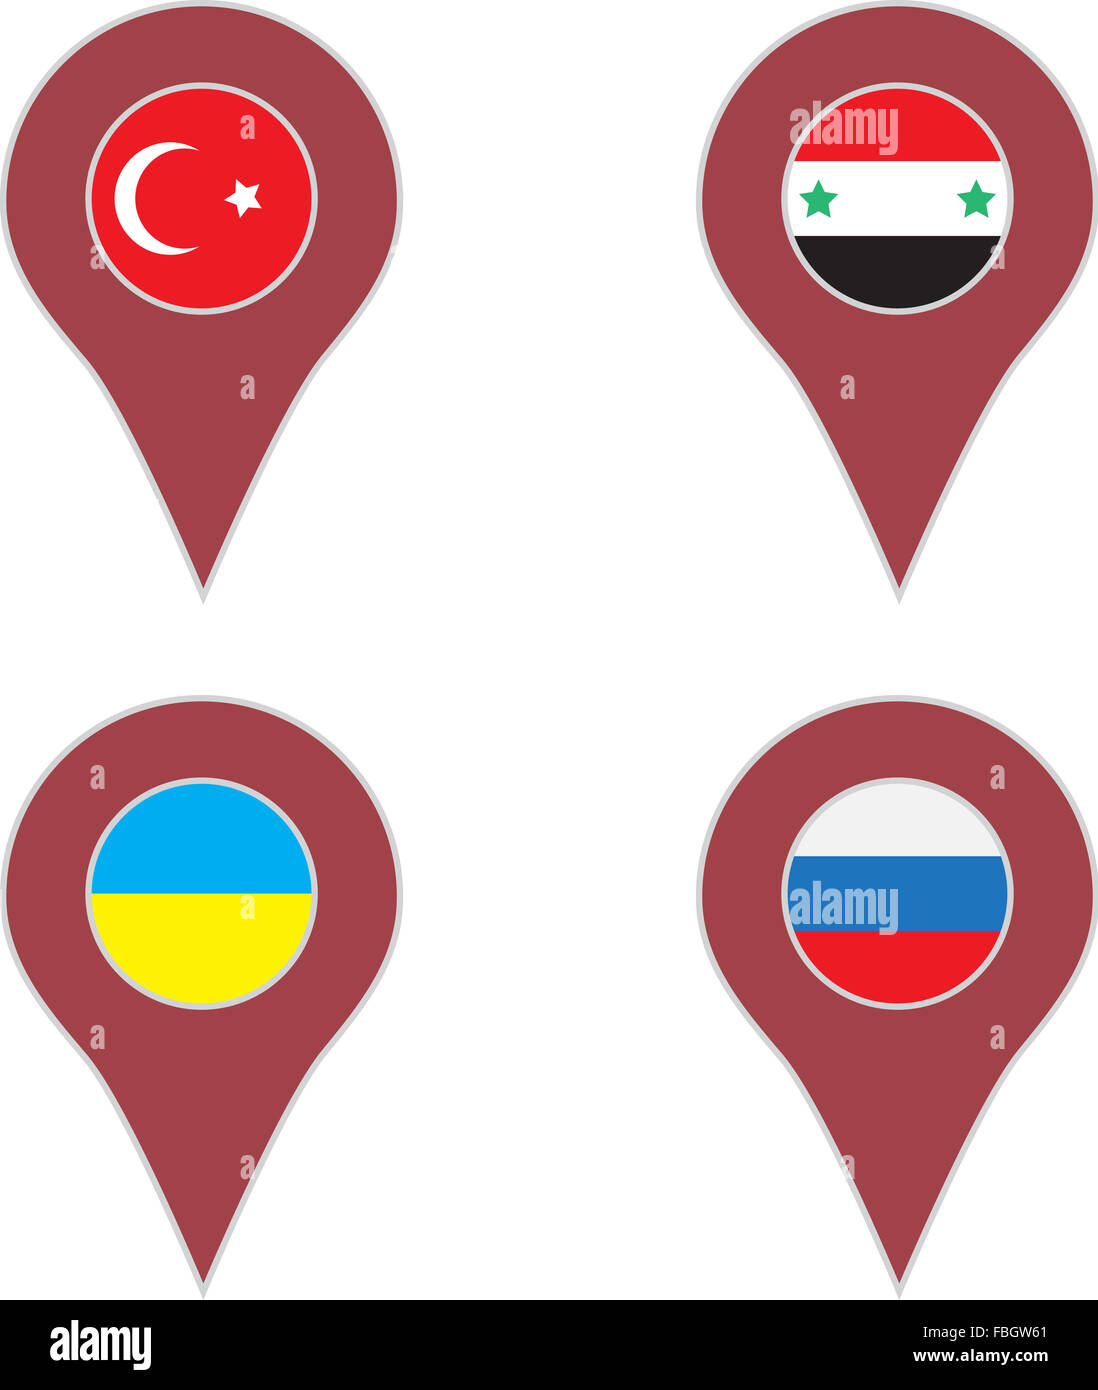 Polo país definido. Turquía y Siria, Ucrania y Rusia. Resumen de arte vectorial ilustración moda inusual Foto de stock